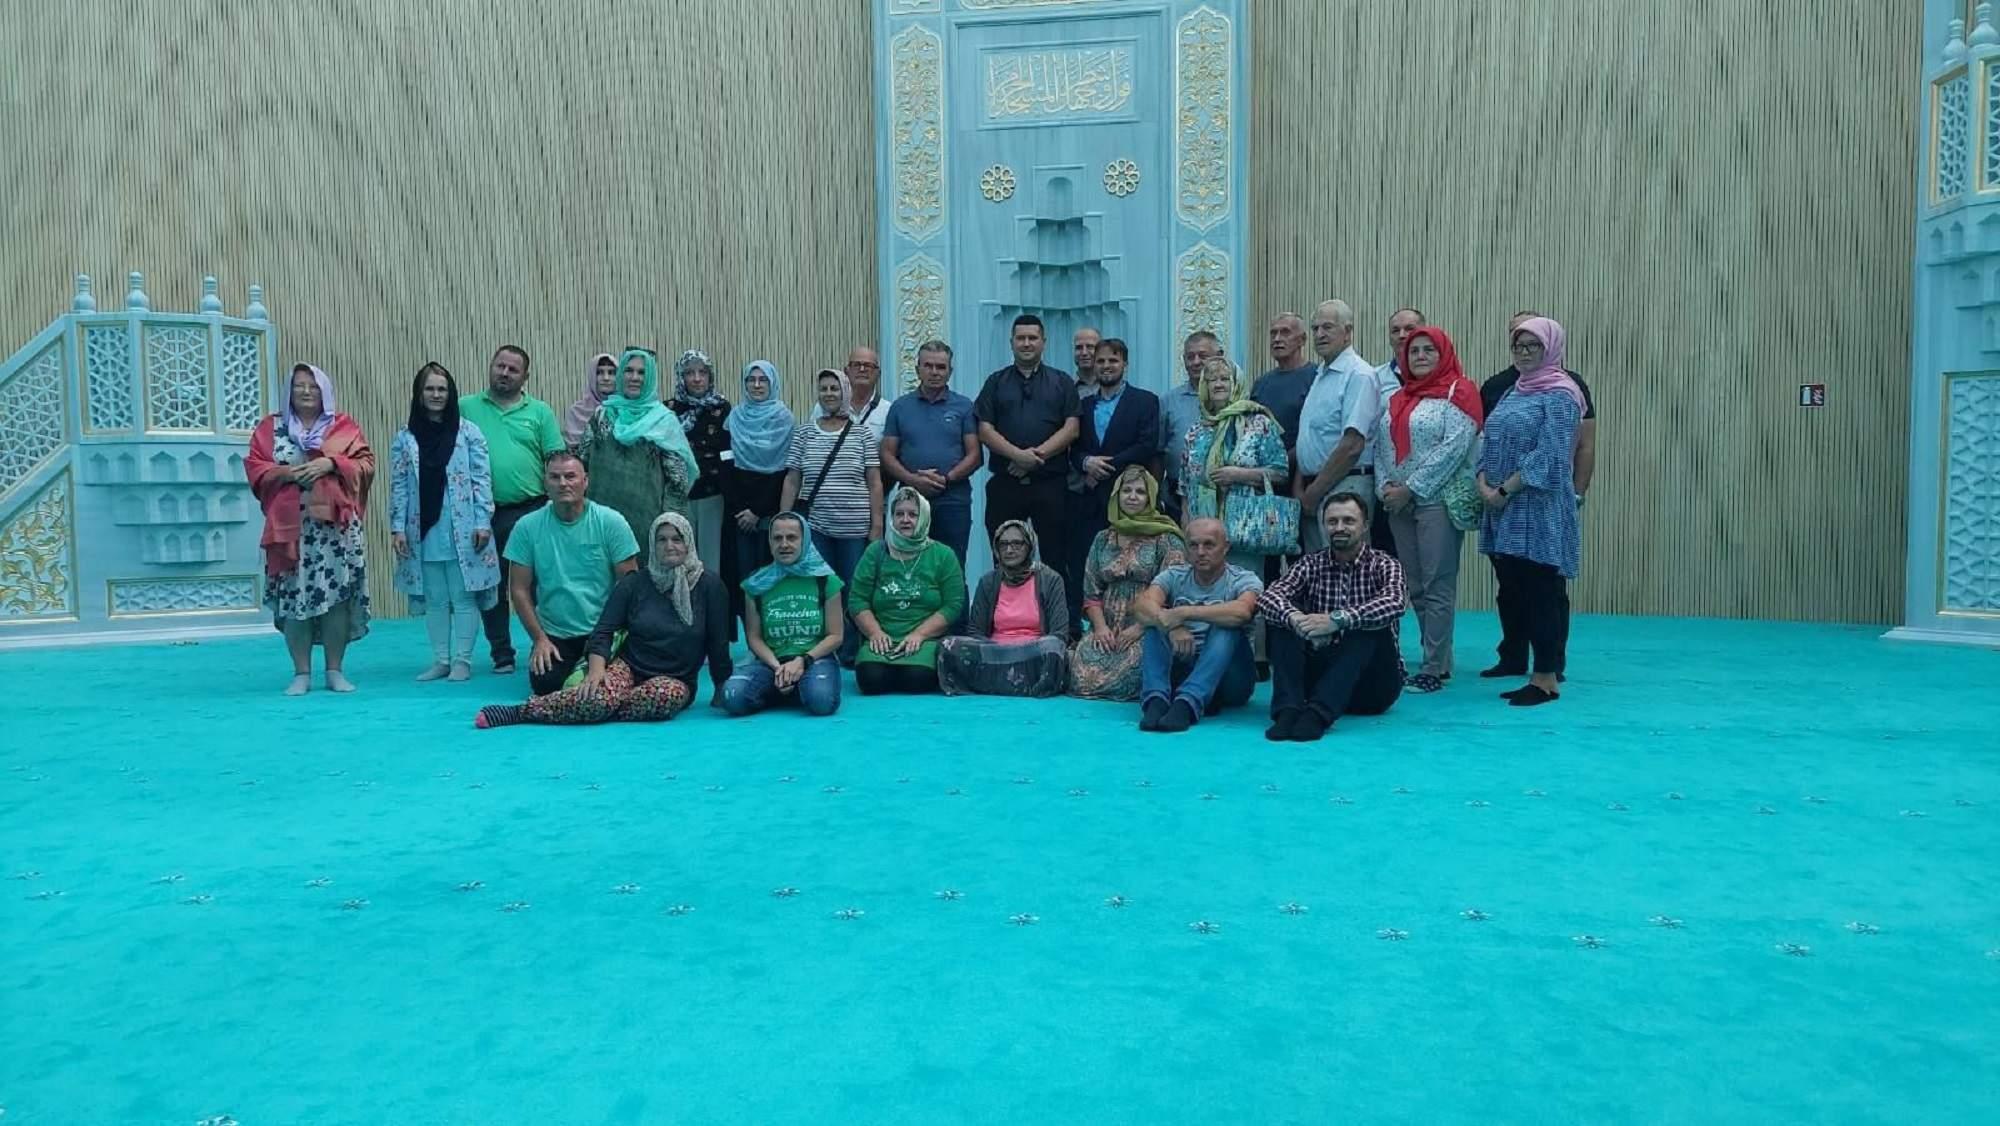 Veliko interesovanje sa Islamskim kulturnim centrom u Sisku - Avaz